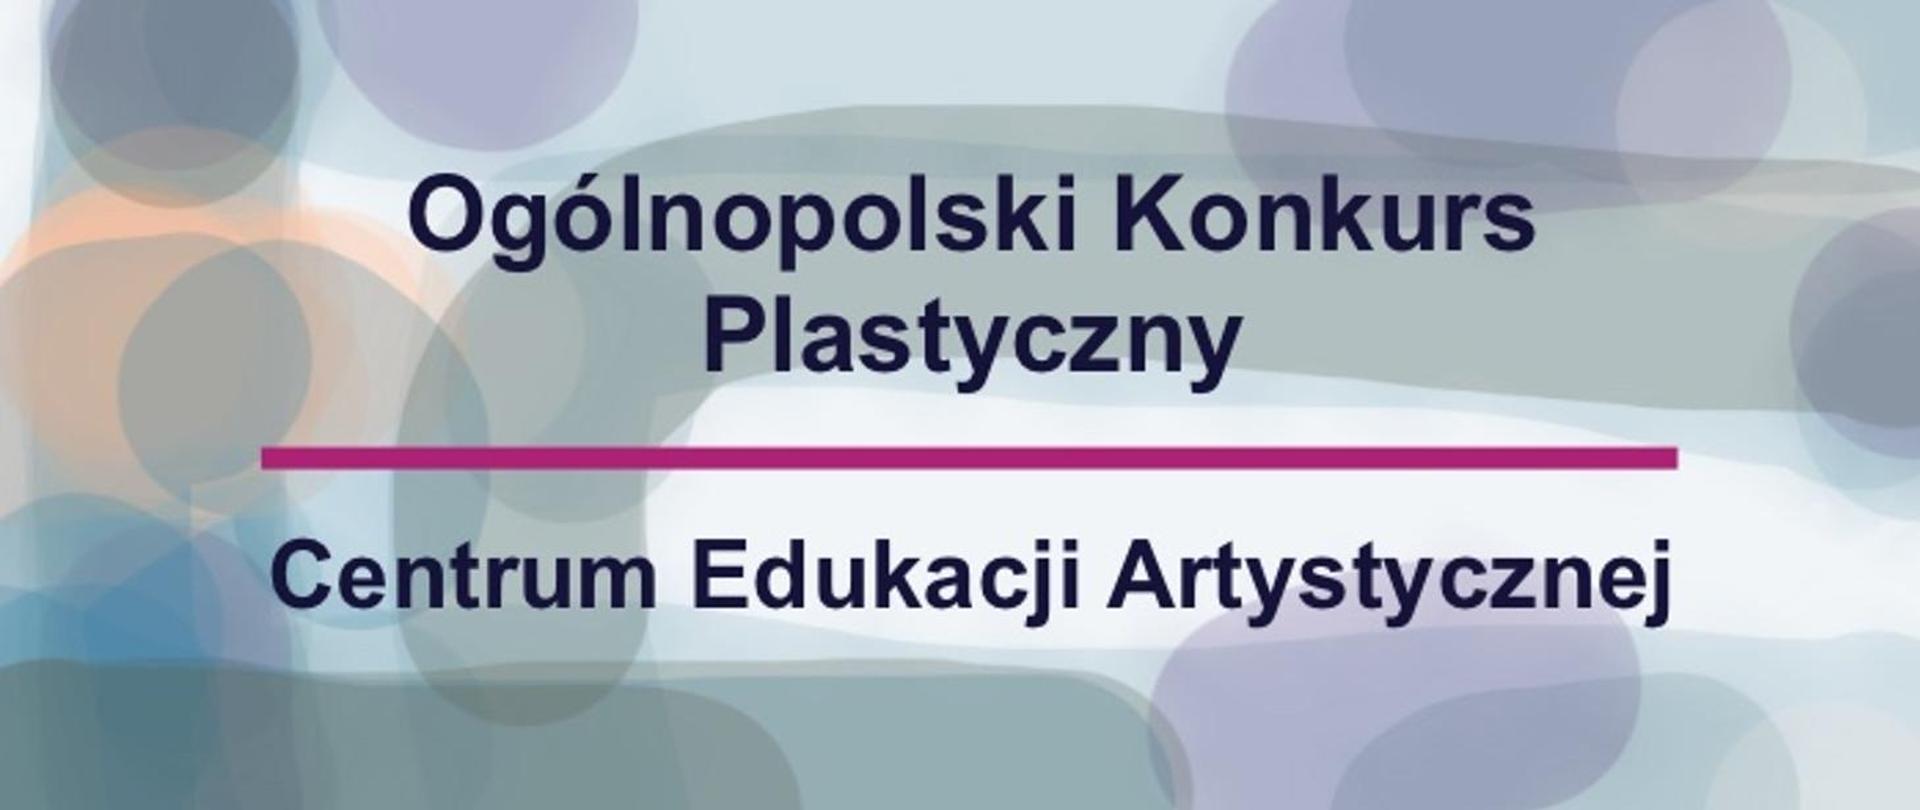 Na planszy w kolorach pastelowych znajduje się napis " Ogólnopolski Konkurs Plastyczny Centrum Edukacji Artystycznej"